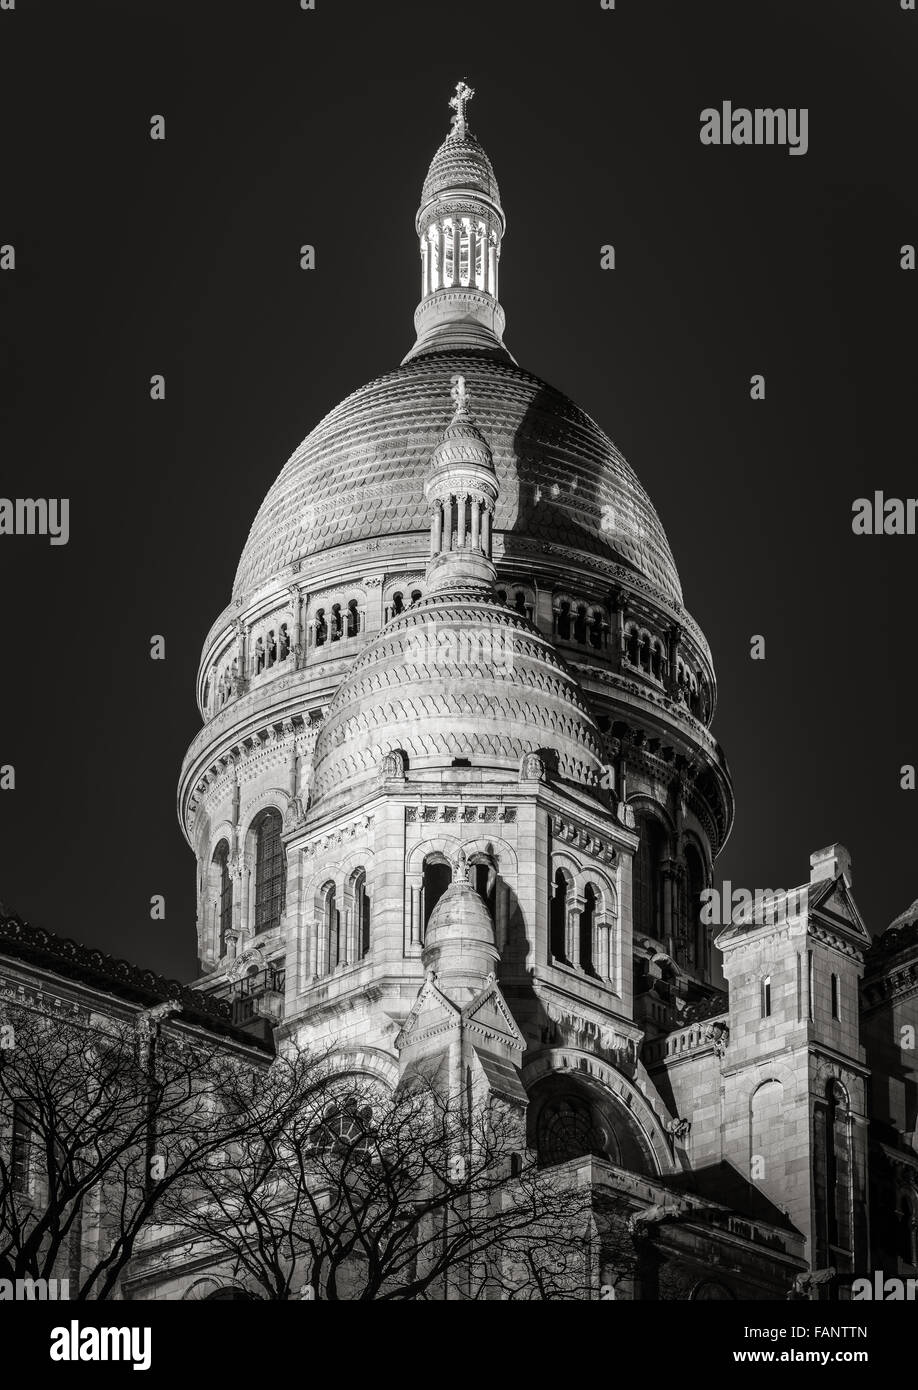 Vista en blanco y negro de las cúpulas de la basílica de Sacre Coeur (Sagrado Corazón) iluminada por la noche en Montmartre, París, Francia. Foto de stock